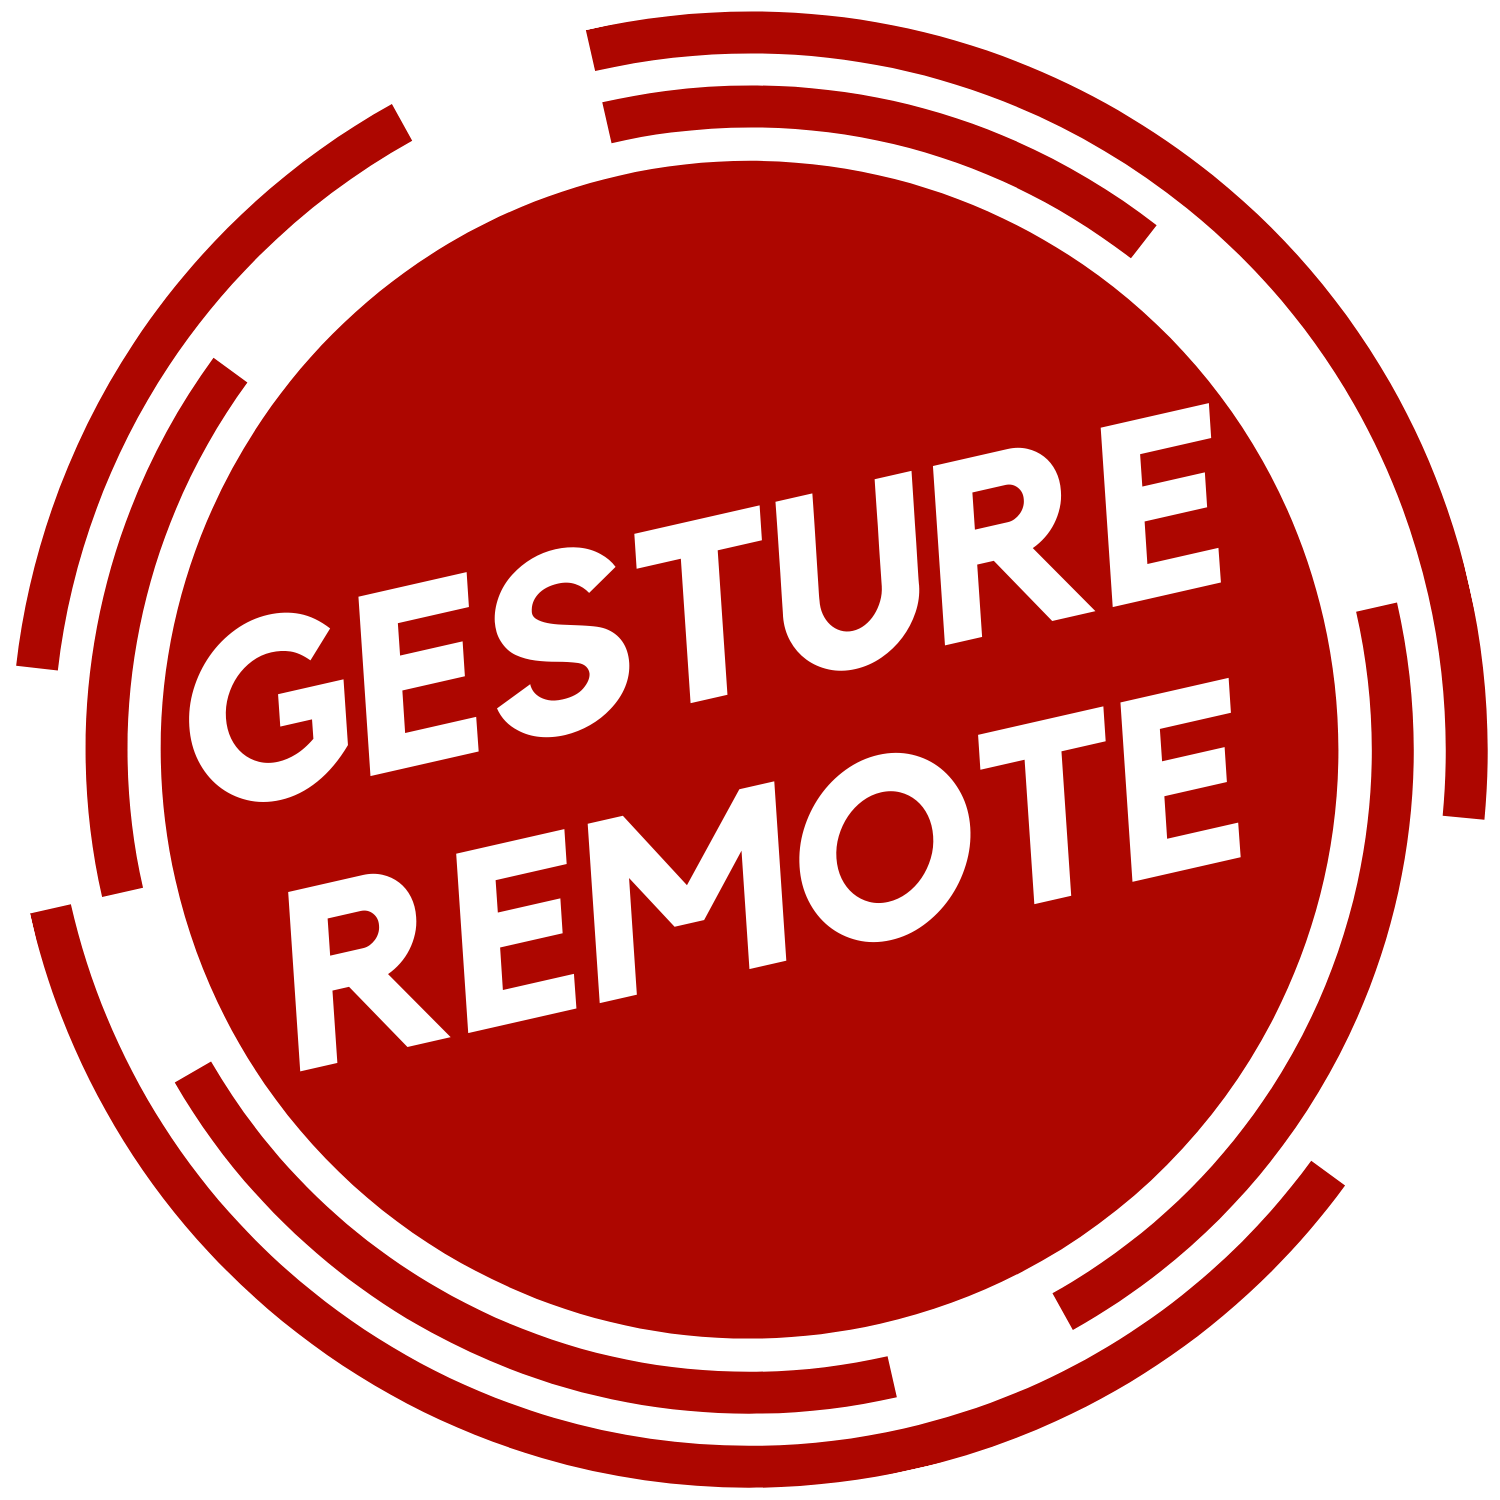 Gesture Remote